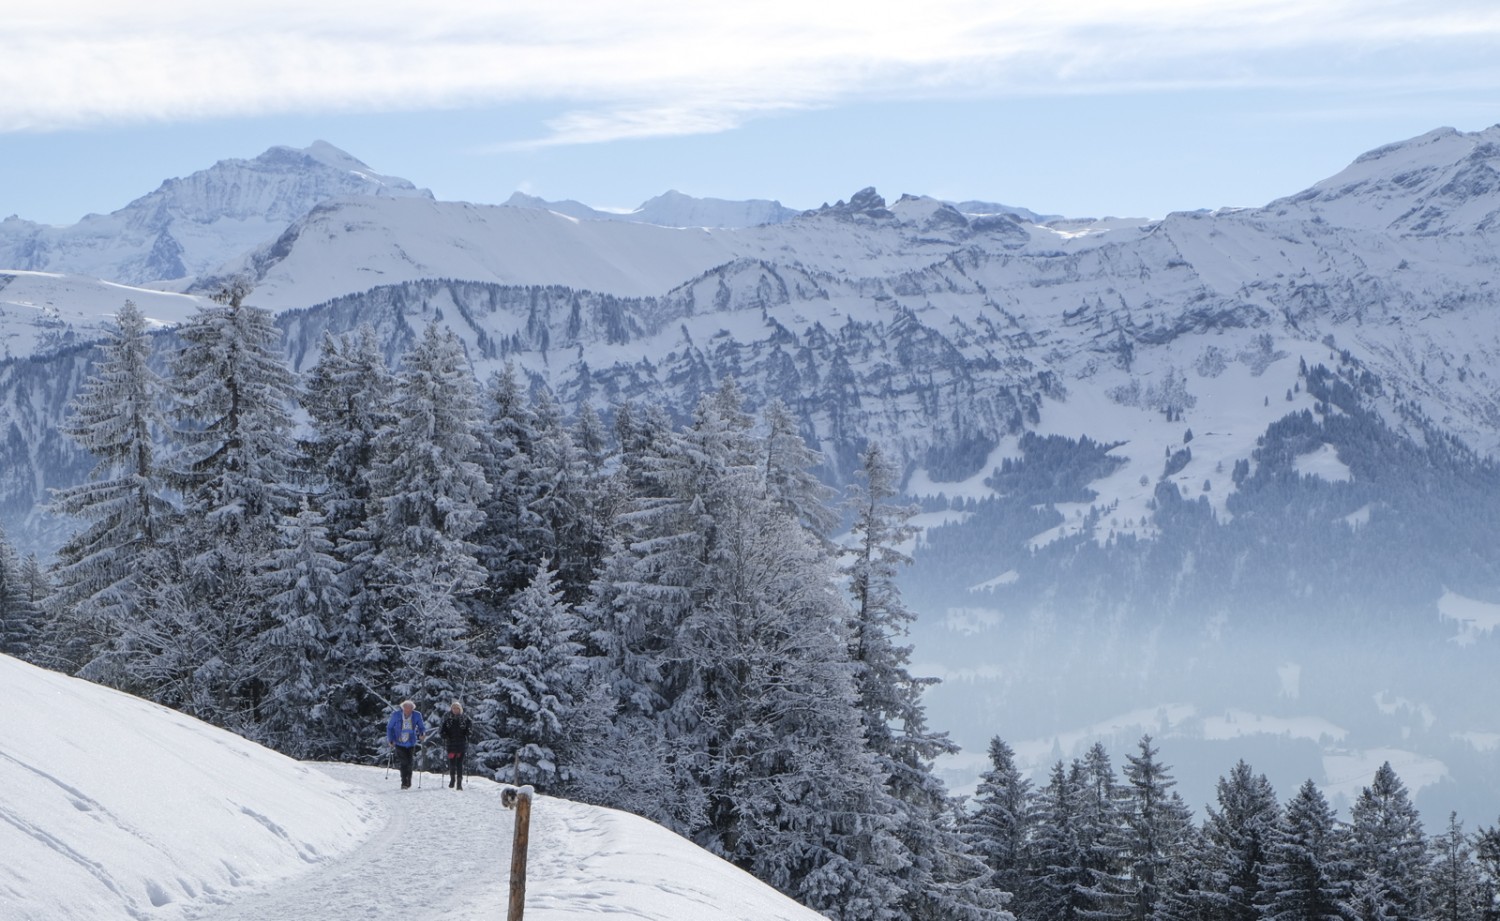 Wandern mit Sicht auf die Berner Alpen. In der Mitte die Lobhörner. Bild: Elsbeth Flüeler